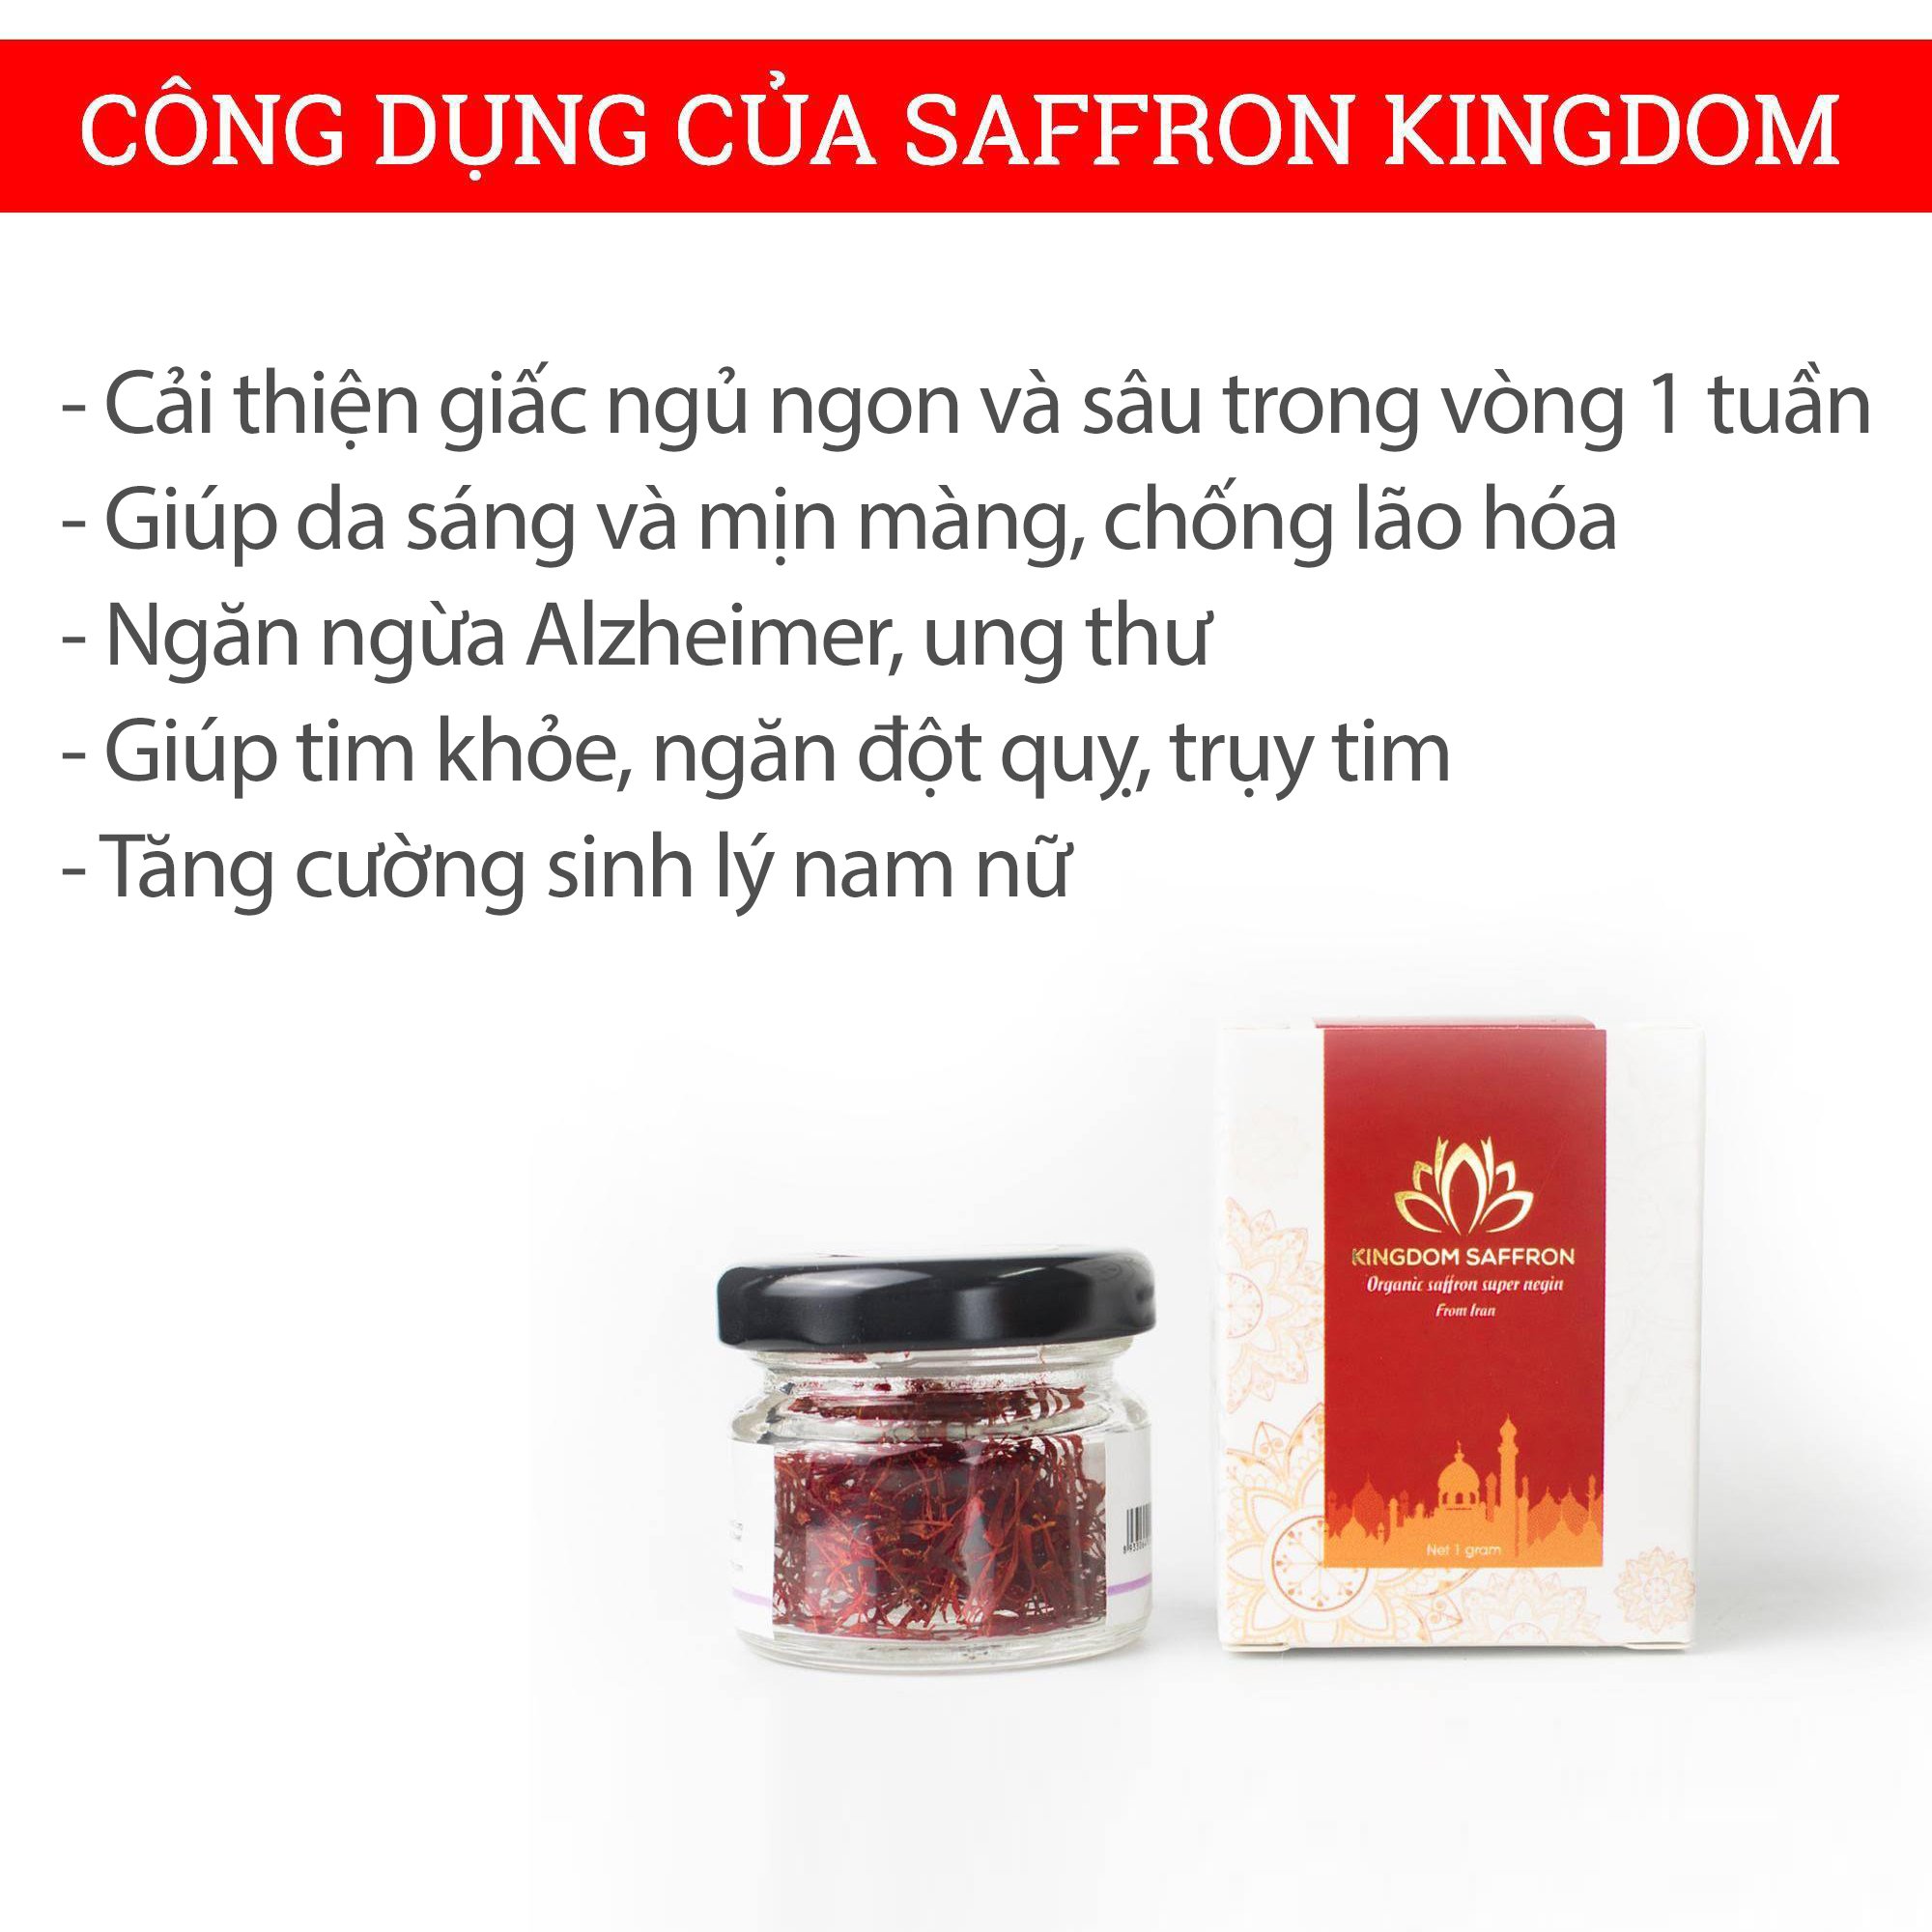 Saffron nhụy hoa nghệ tây Kingdom Herb Iran loại super negin thượng hạng hộp 2 gram (tặng bình thuỷ tinh cao cấp và táo đỏ)